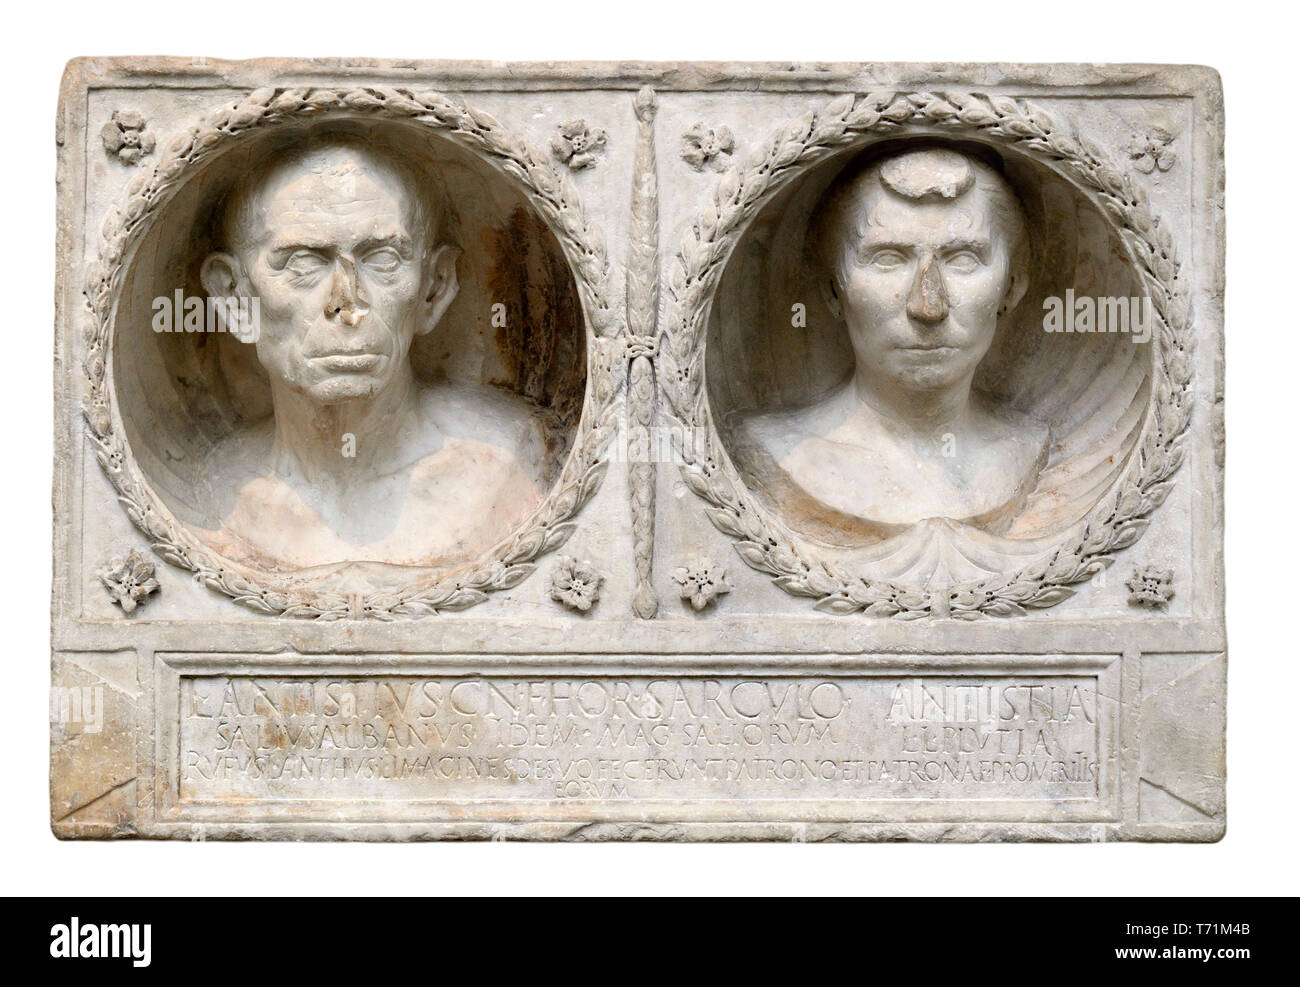 Museo Británico, Bloomsbury, Londres, Inglaterra, Reino Unido. "Libertos retratos' - relieves en piedra, una vez parte de una tumba romana, de antiguos esclavos que habían comprado o e Foto de stock